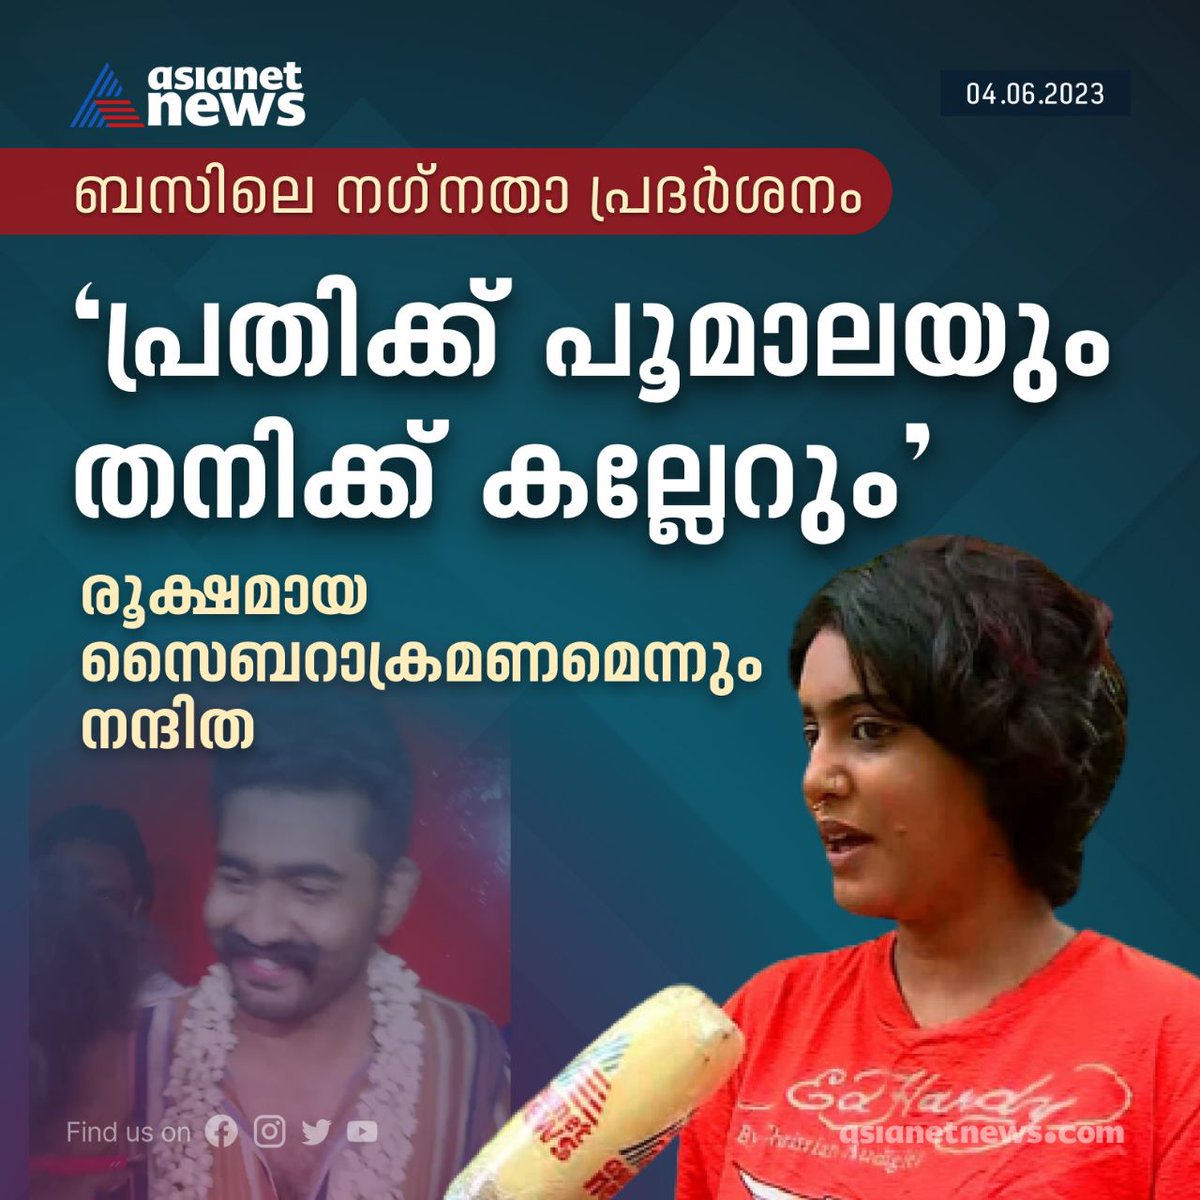 ന​ഗ്നതാപ്രദർശനക്കേസിലെ പ്രതി സവാദിന് സ്വീകരണം നൽകിയ സംഭവം, പ്രതികരിച്ച് പരാതിക്കാരിയായ യുവതി

Read More >>> asianetnews.com/kerala-news/na…

#KeralaNews